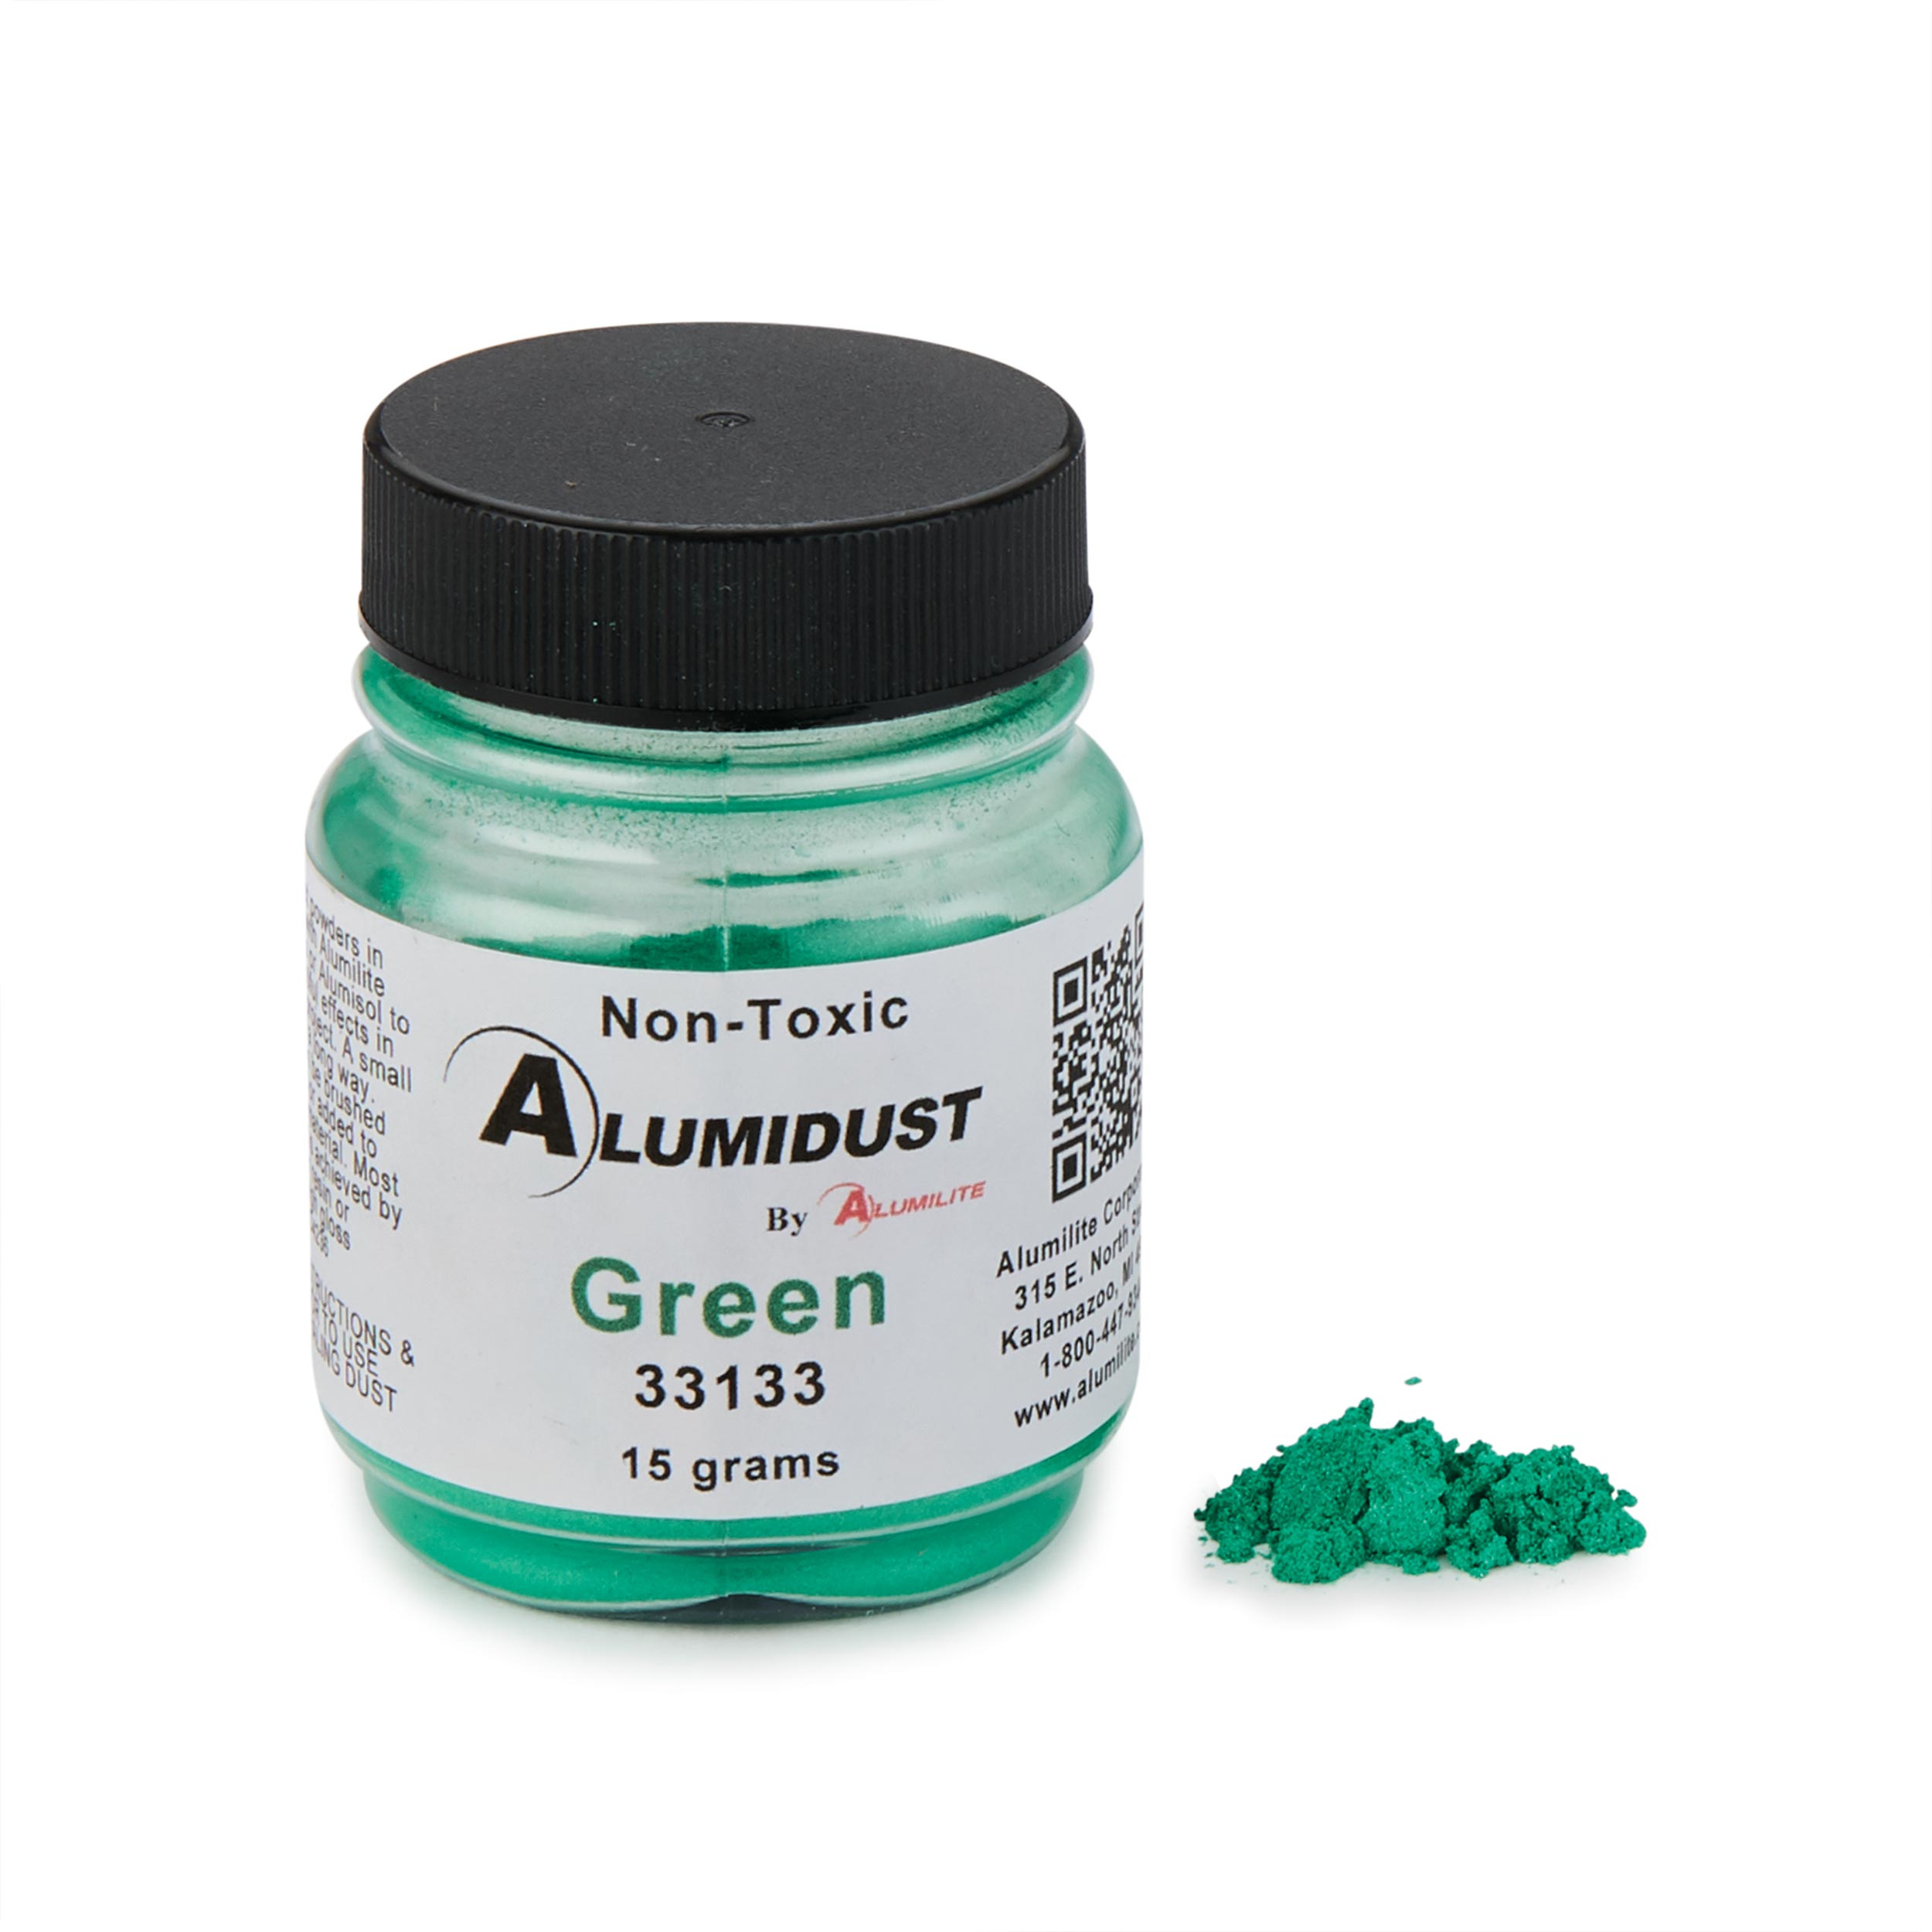 Alumidust Green 15gram